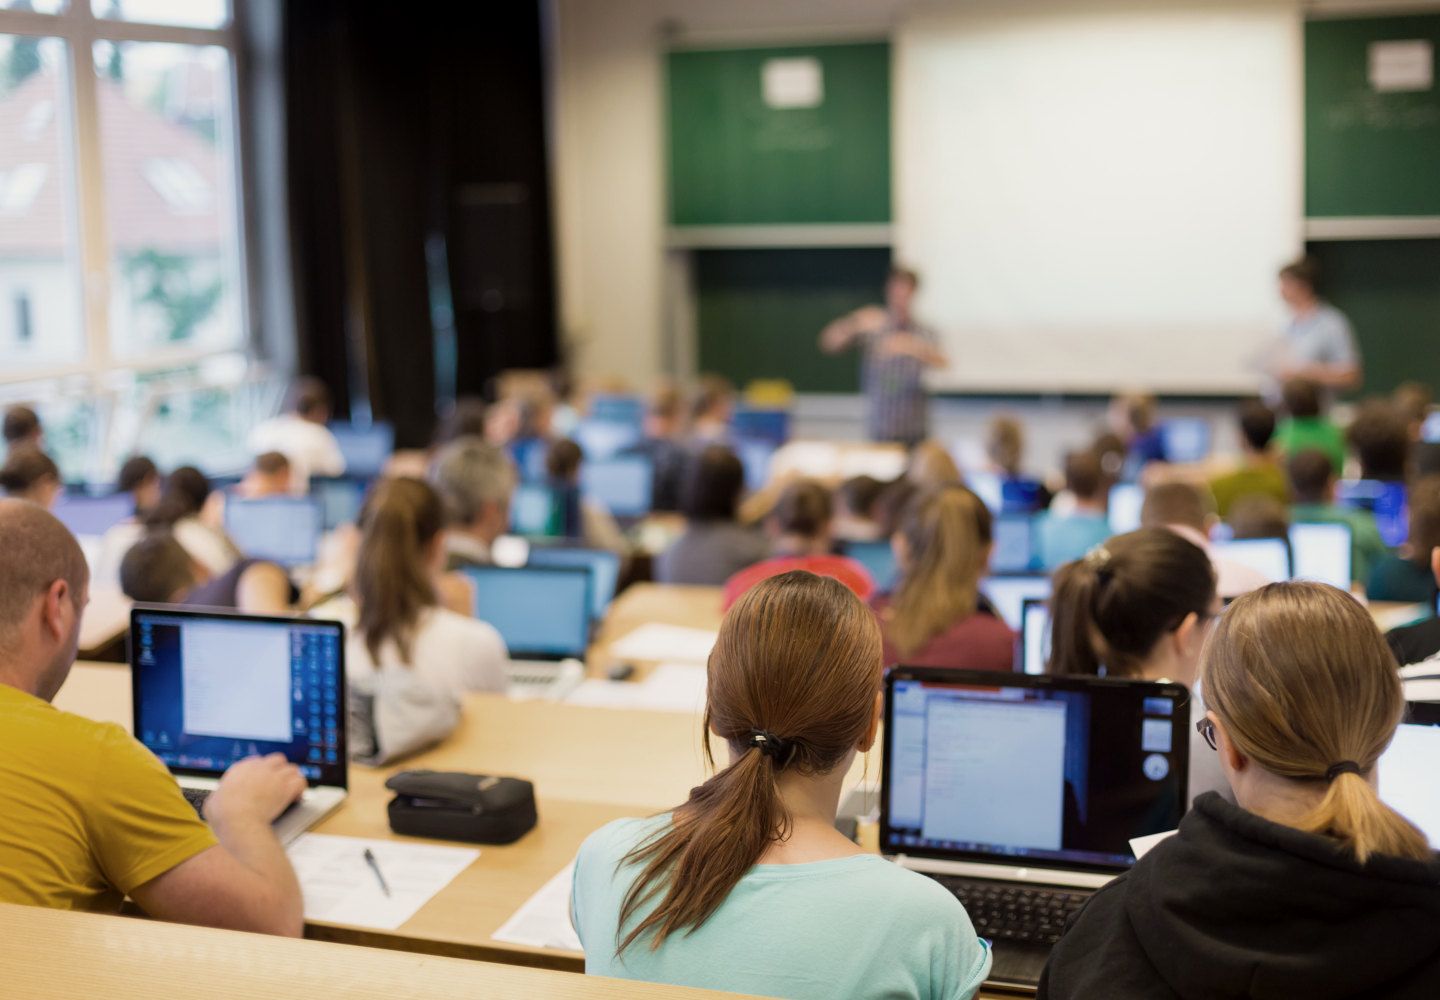 Billede af undervisningslokale med studerende med computere og undervisere ved tavlen